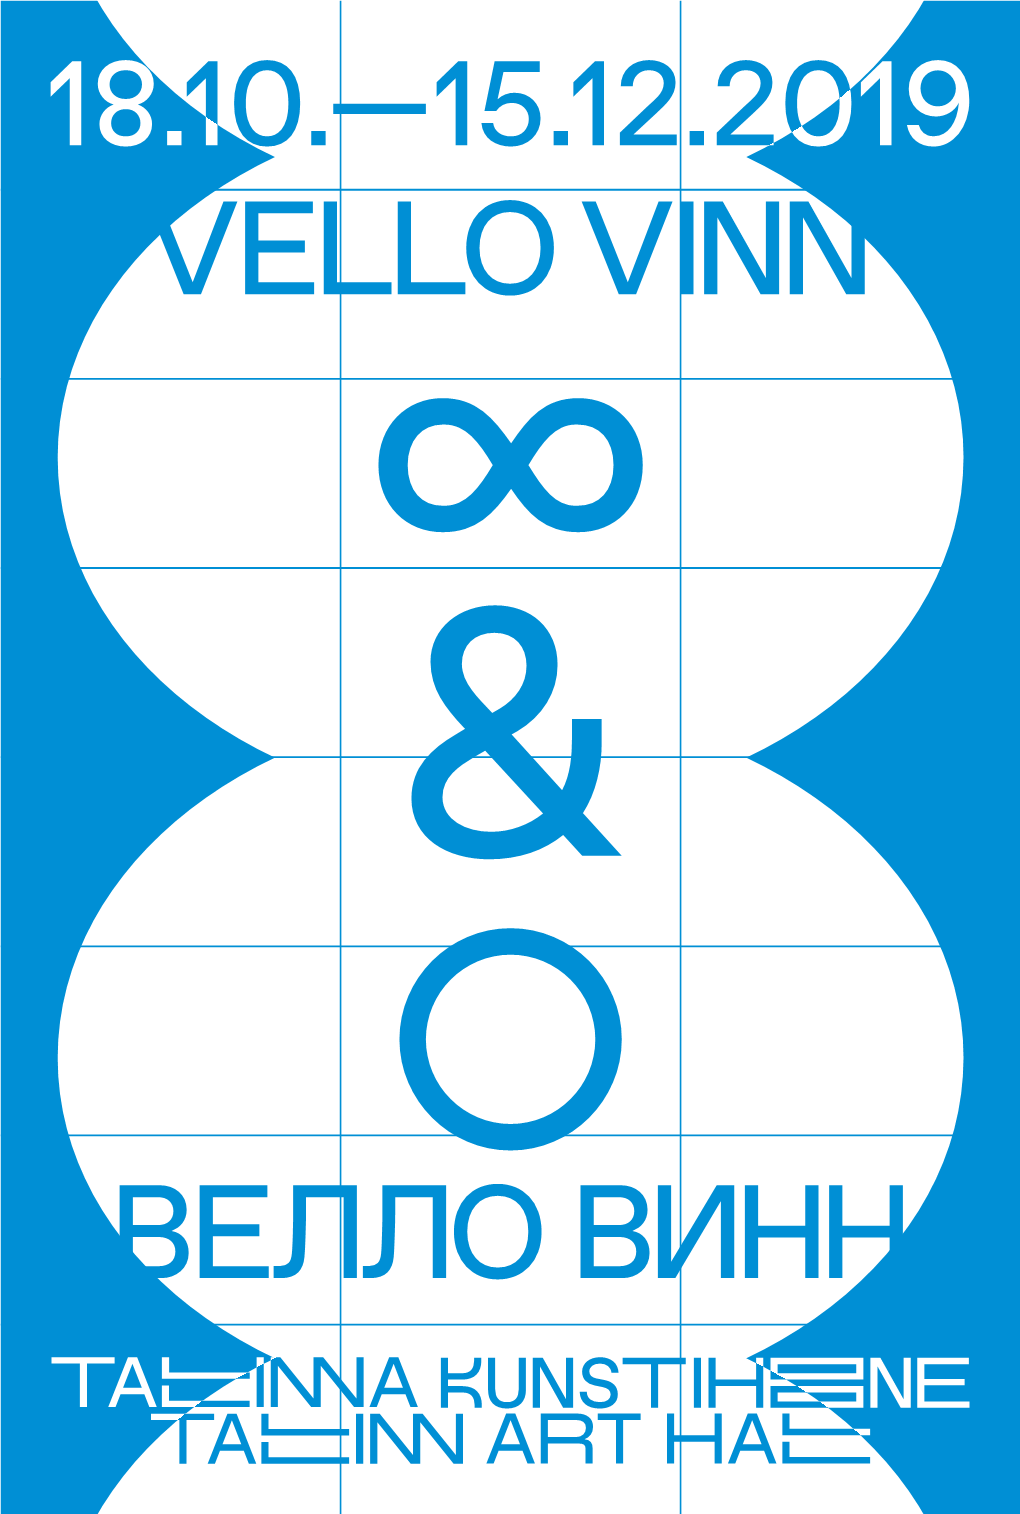 Tallinna Kunstihoone Vello Vinn